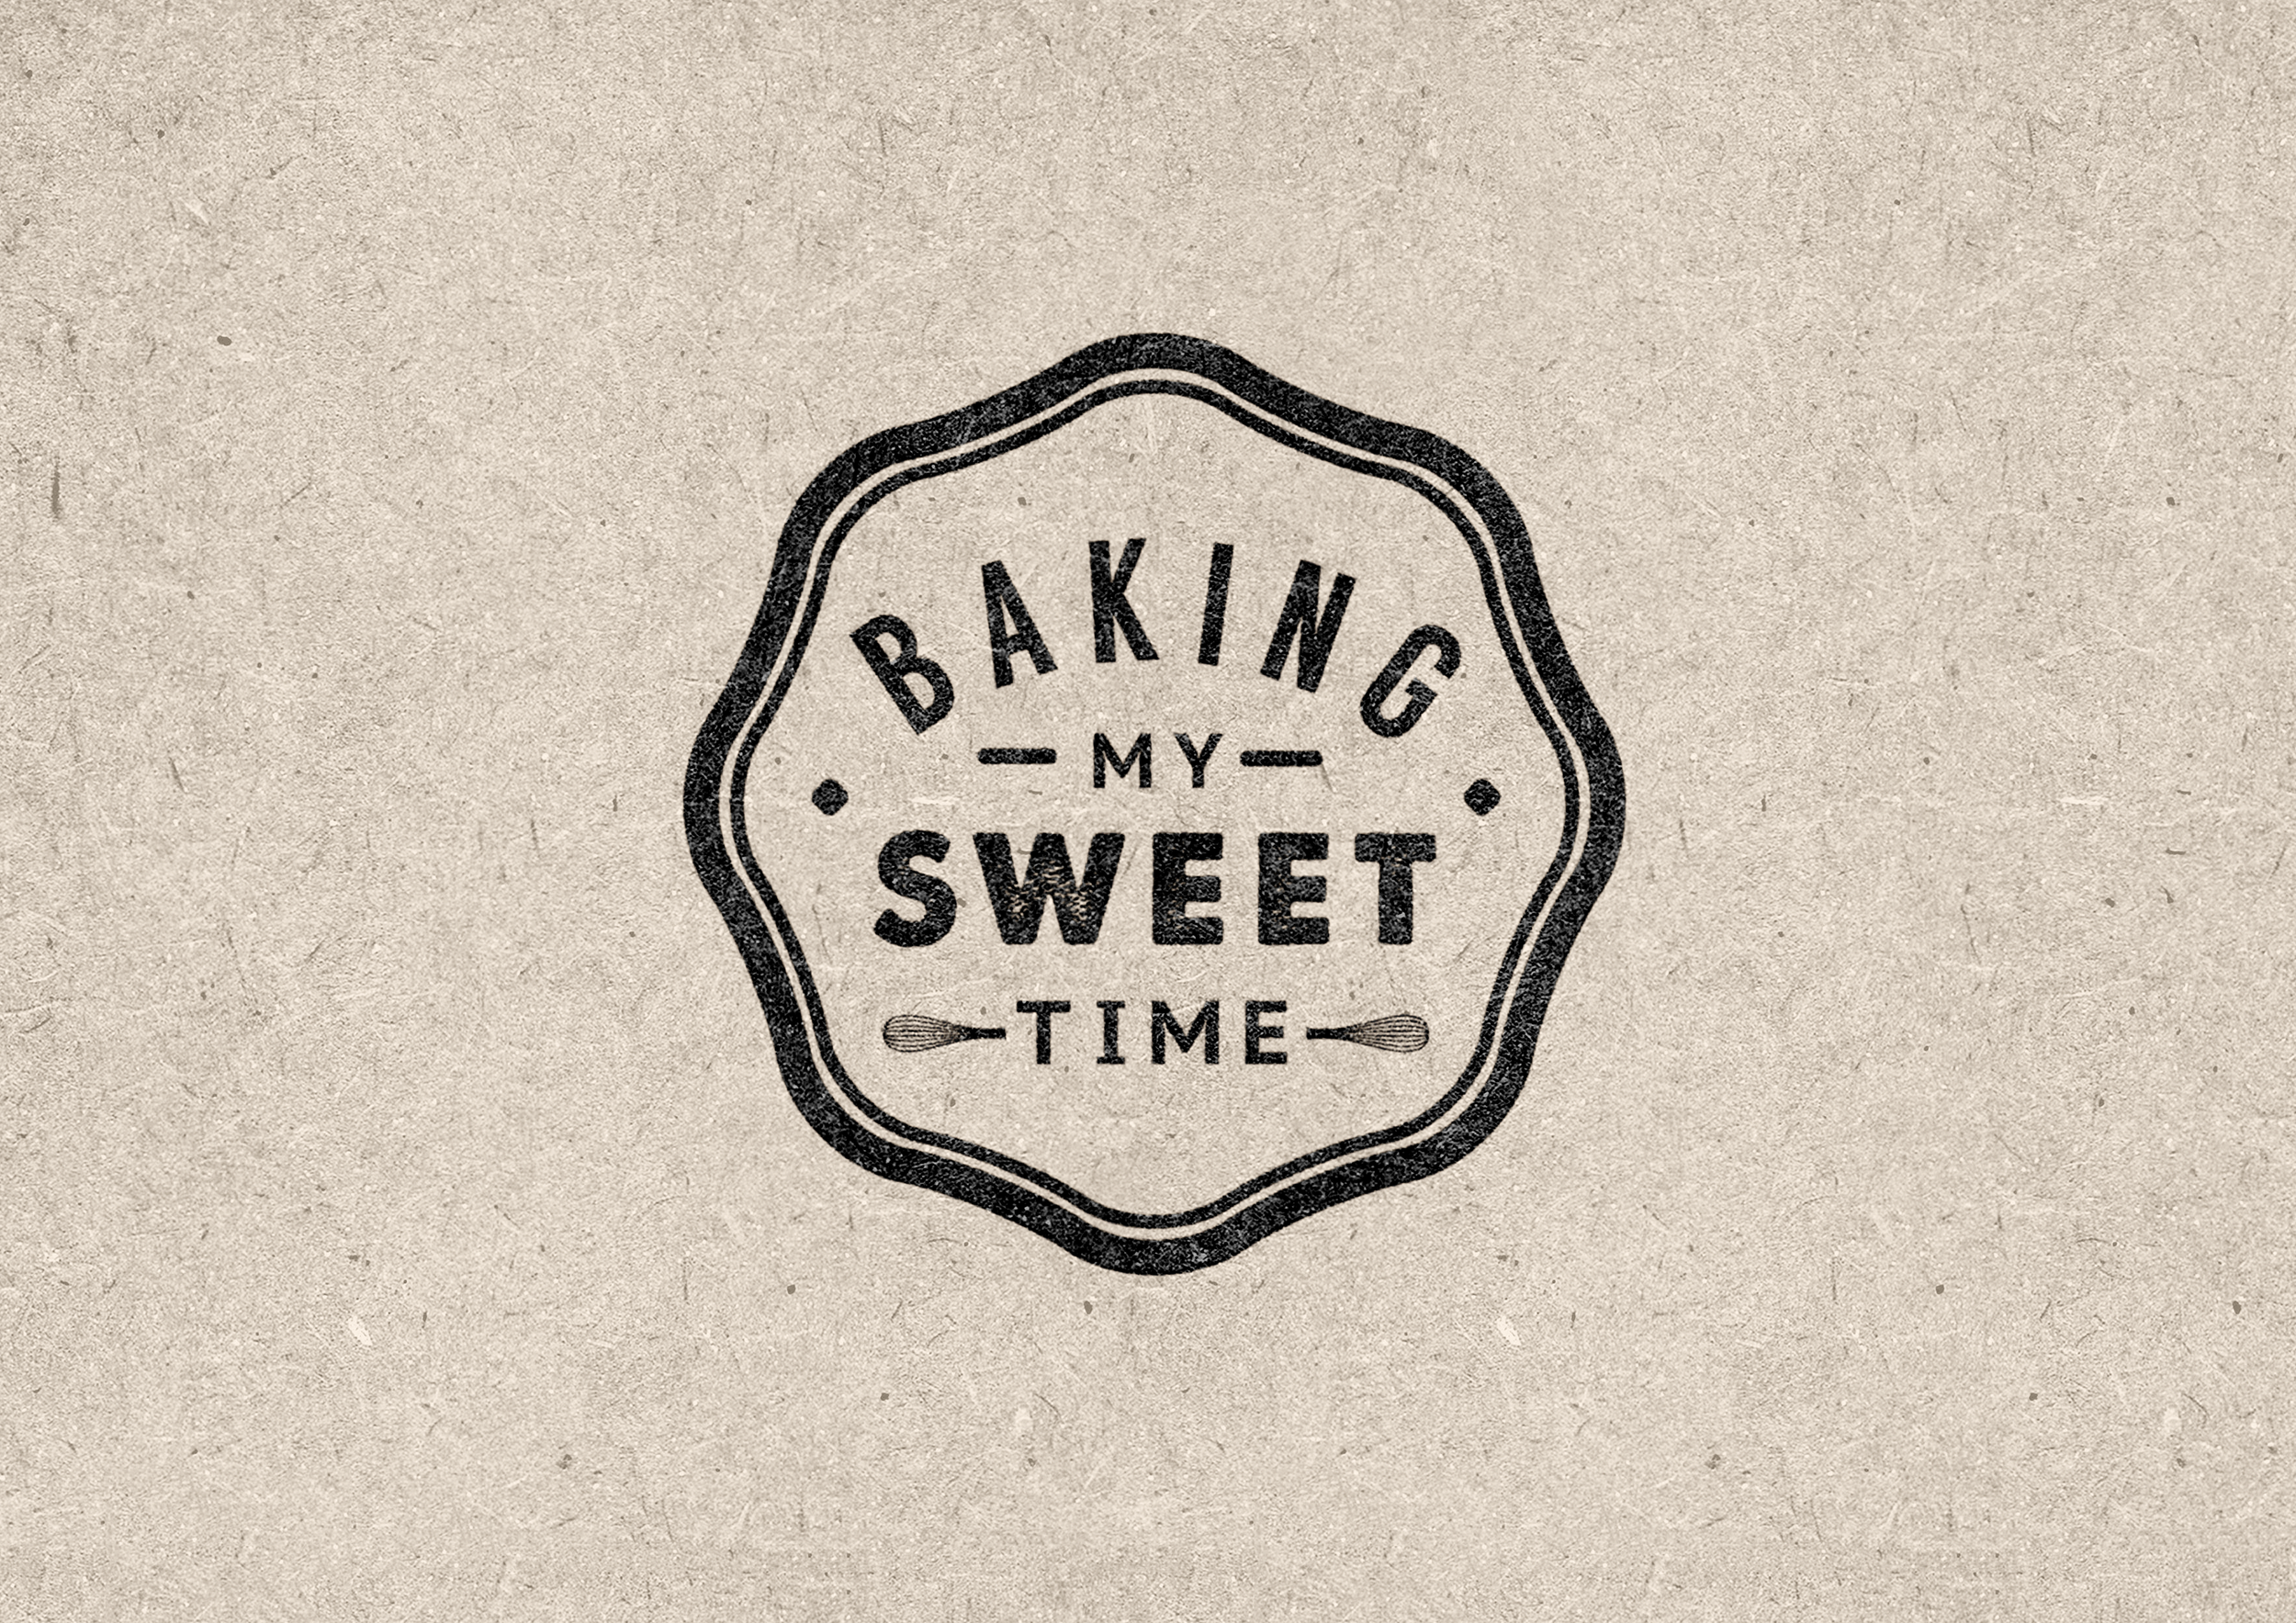 Baking My Sweet Time